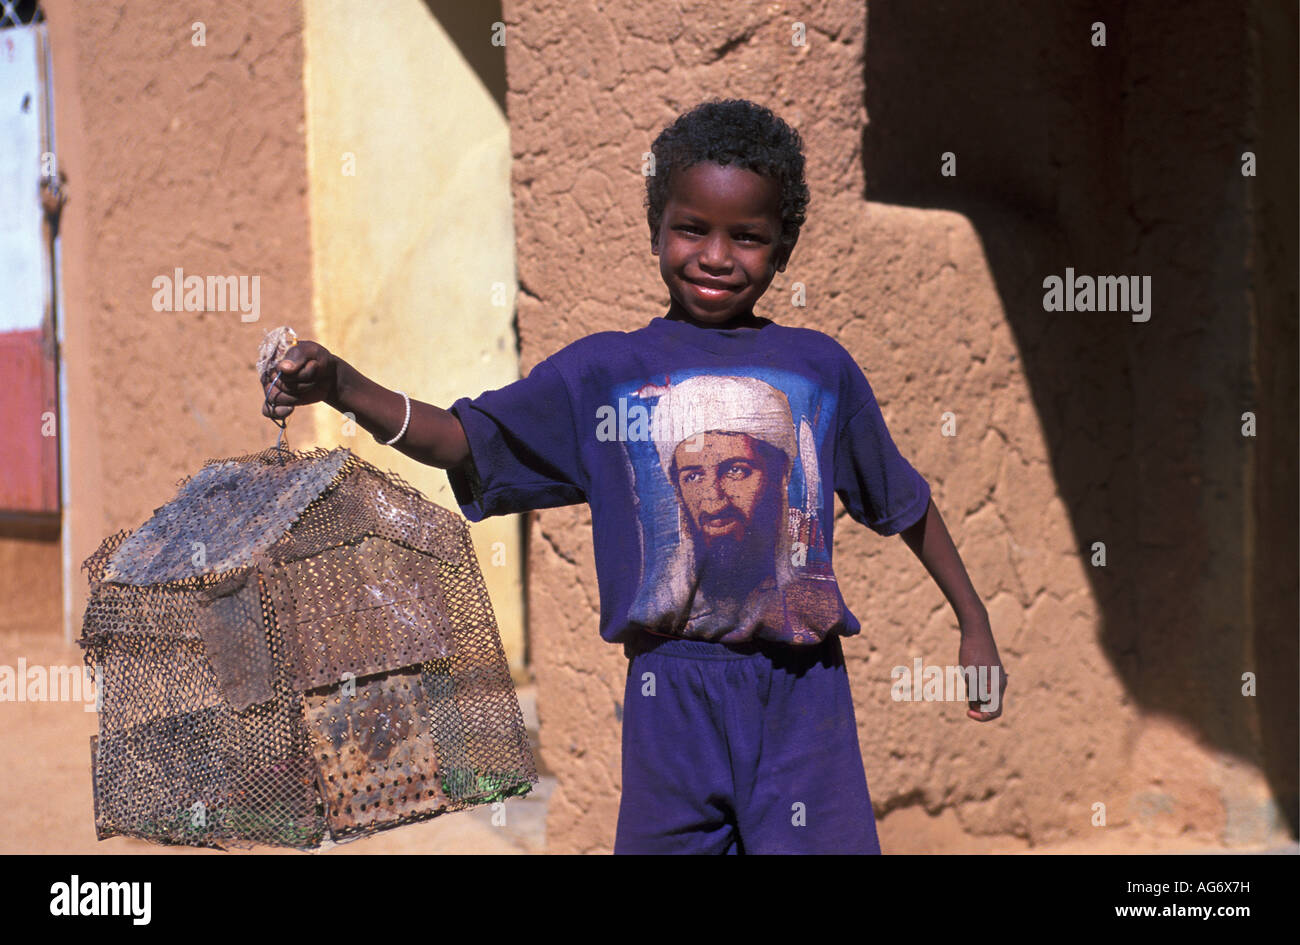 Niger Agadez Boy holding lizard la gabbia e indossa la t-shirt con immagine di Osama Bin Laden Foto Stock